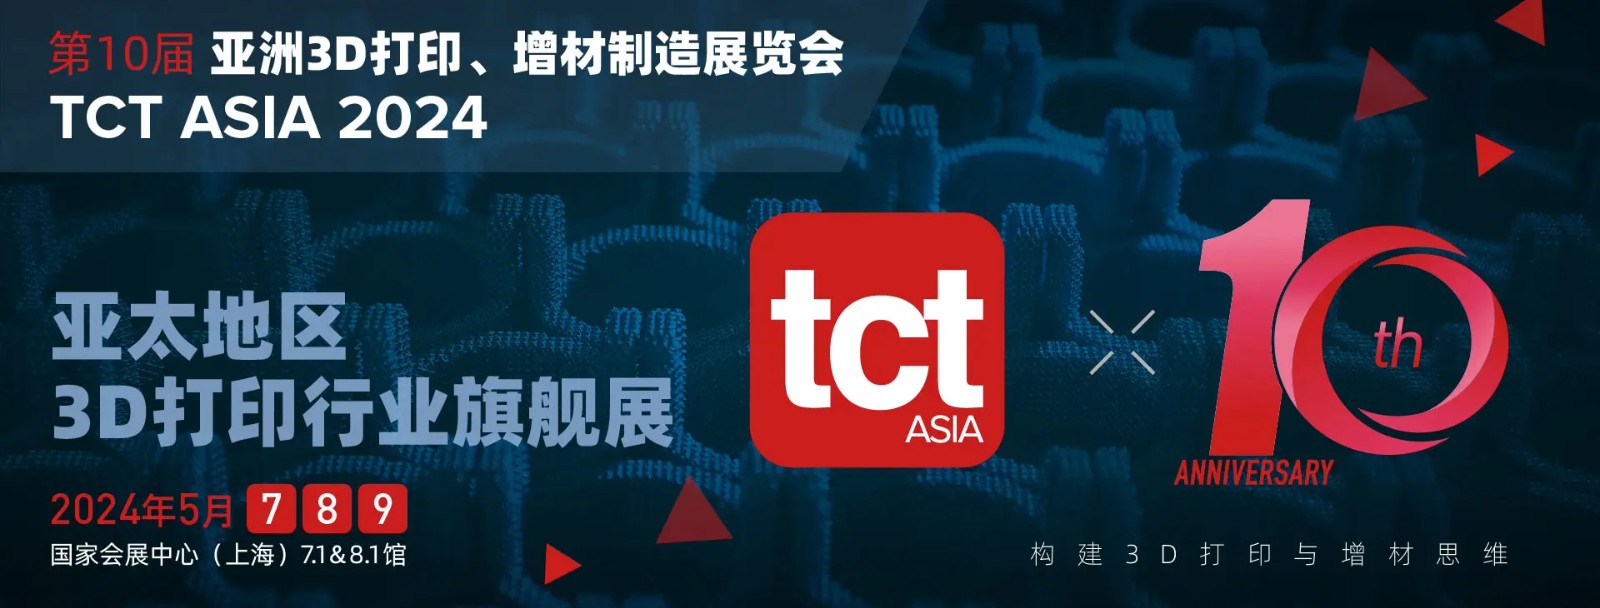 2024上海TCT亚洲3D打印、增材制造展